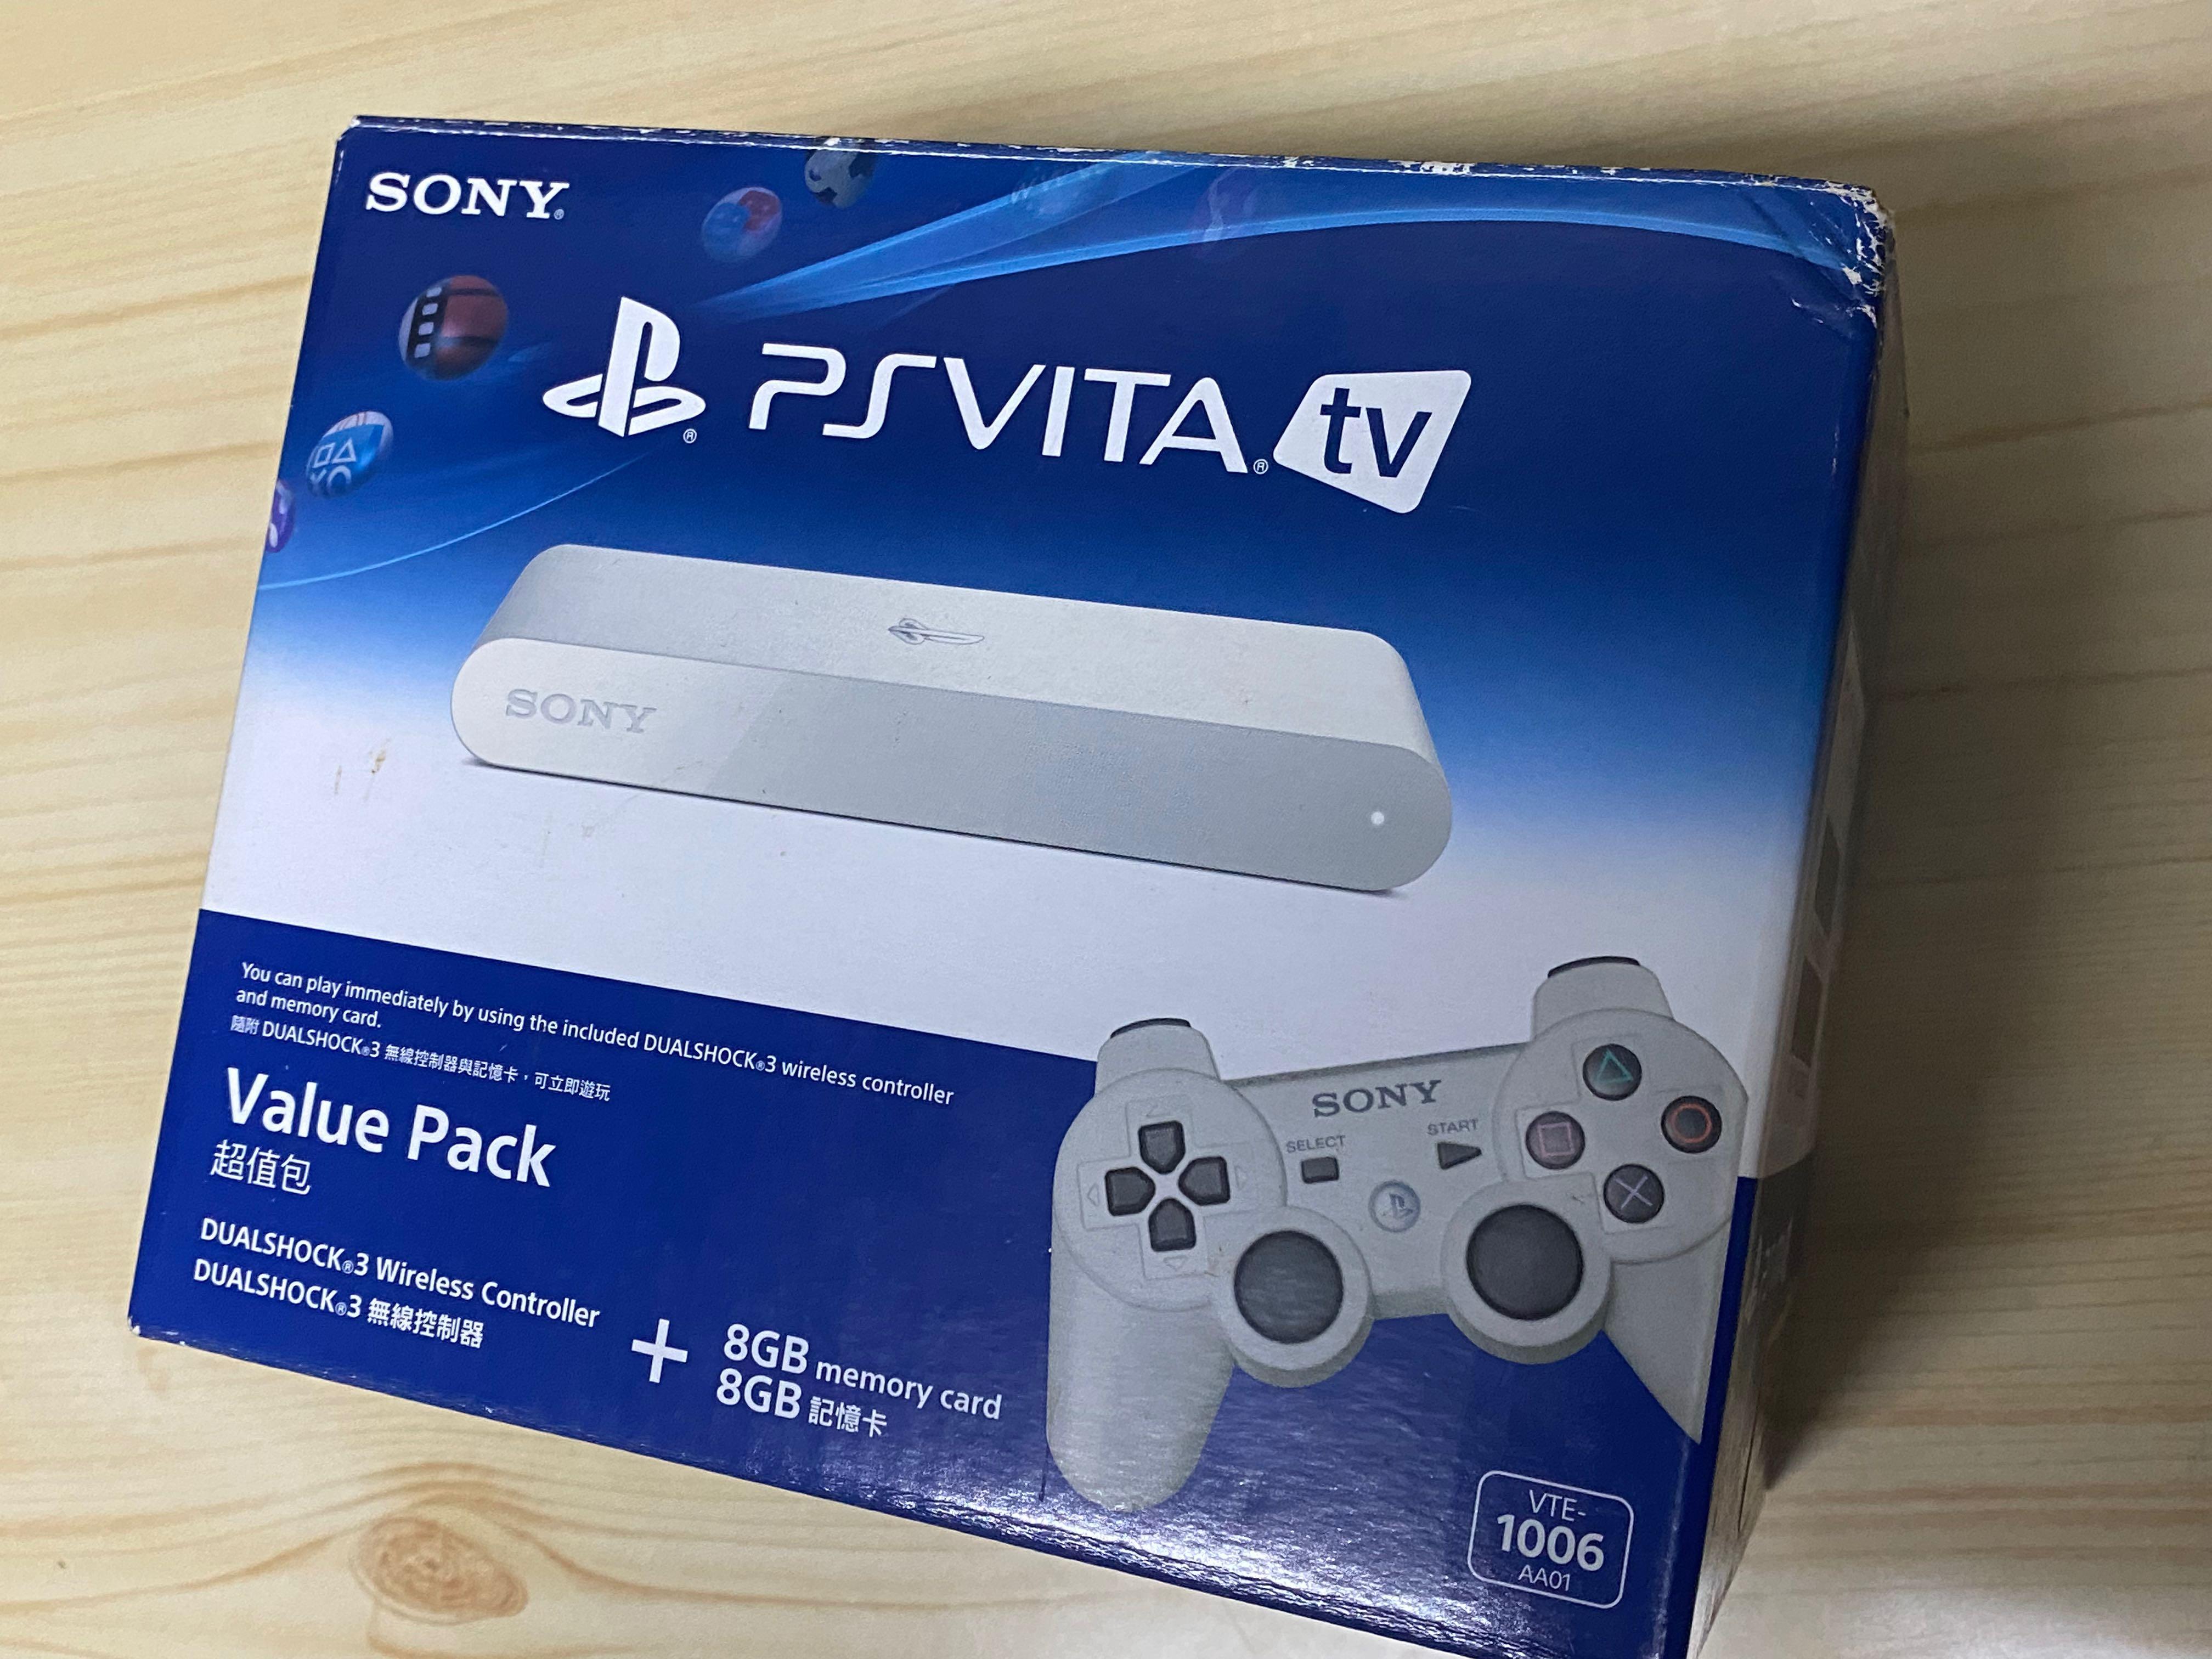 Sony psvita tv value pack （無破解）, 電子遊戲, 電子遊戲機